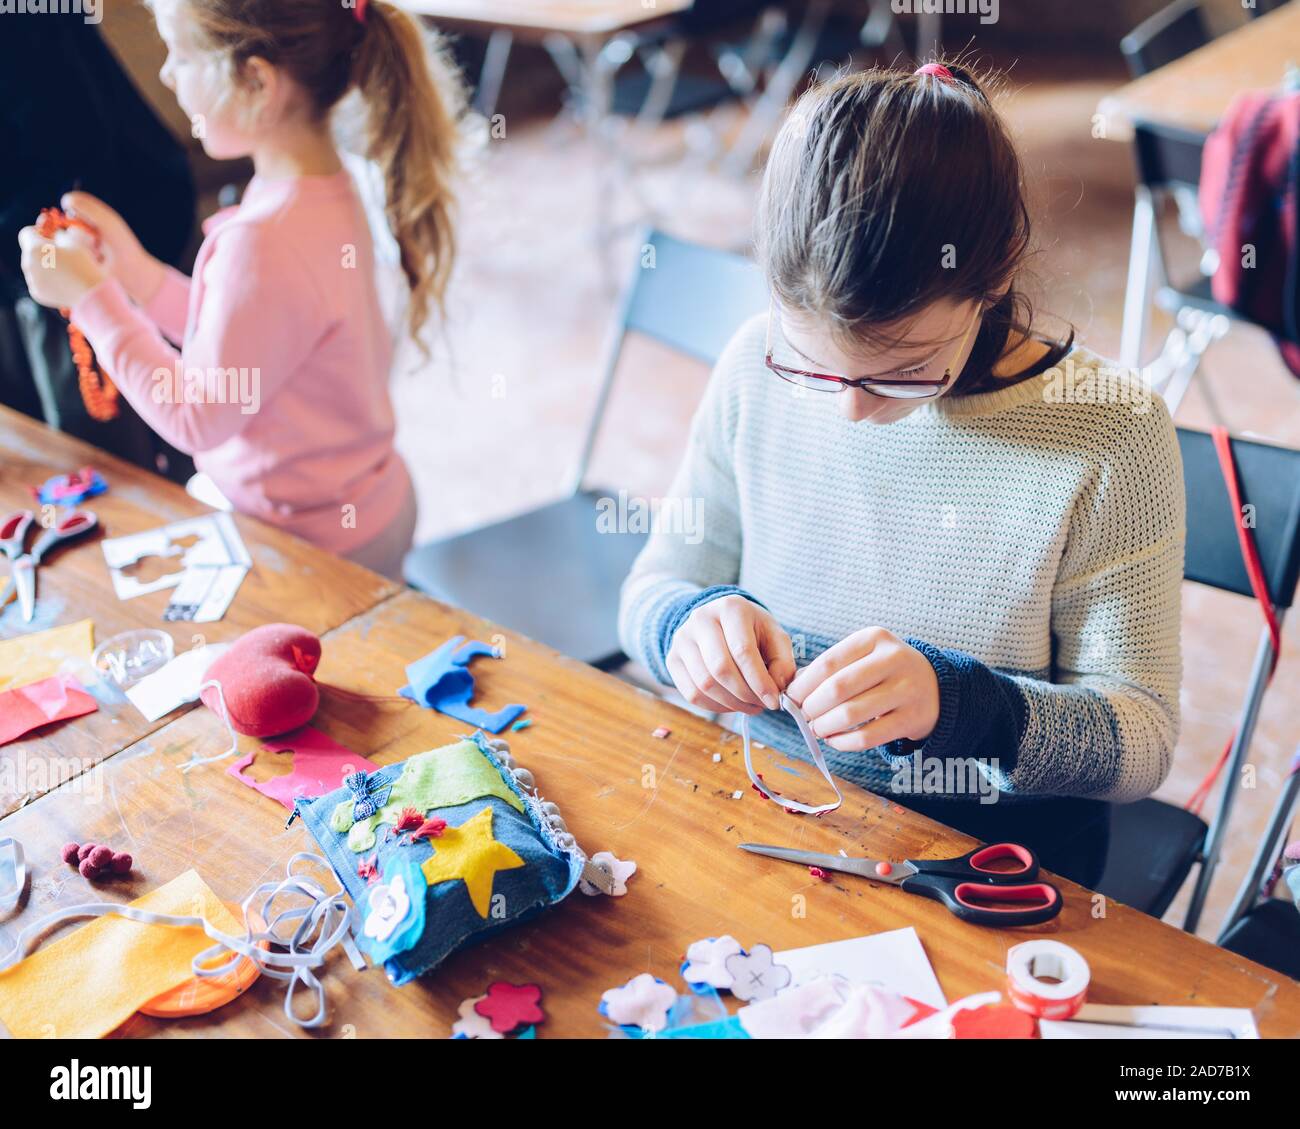 Sarto laboratori artistici per bambini - una ragazza di cucitura decorazioni in feltro Foto Stock